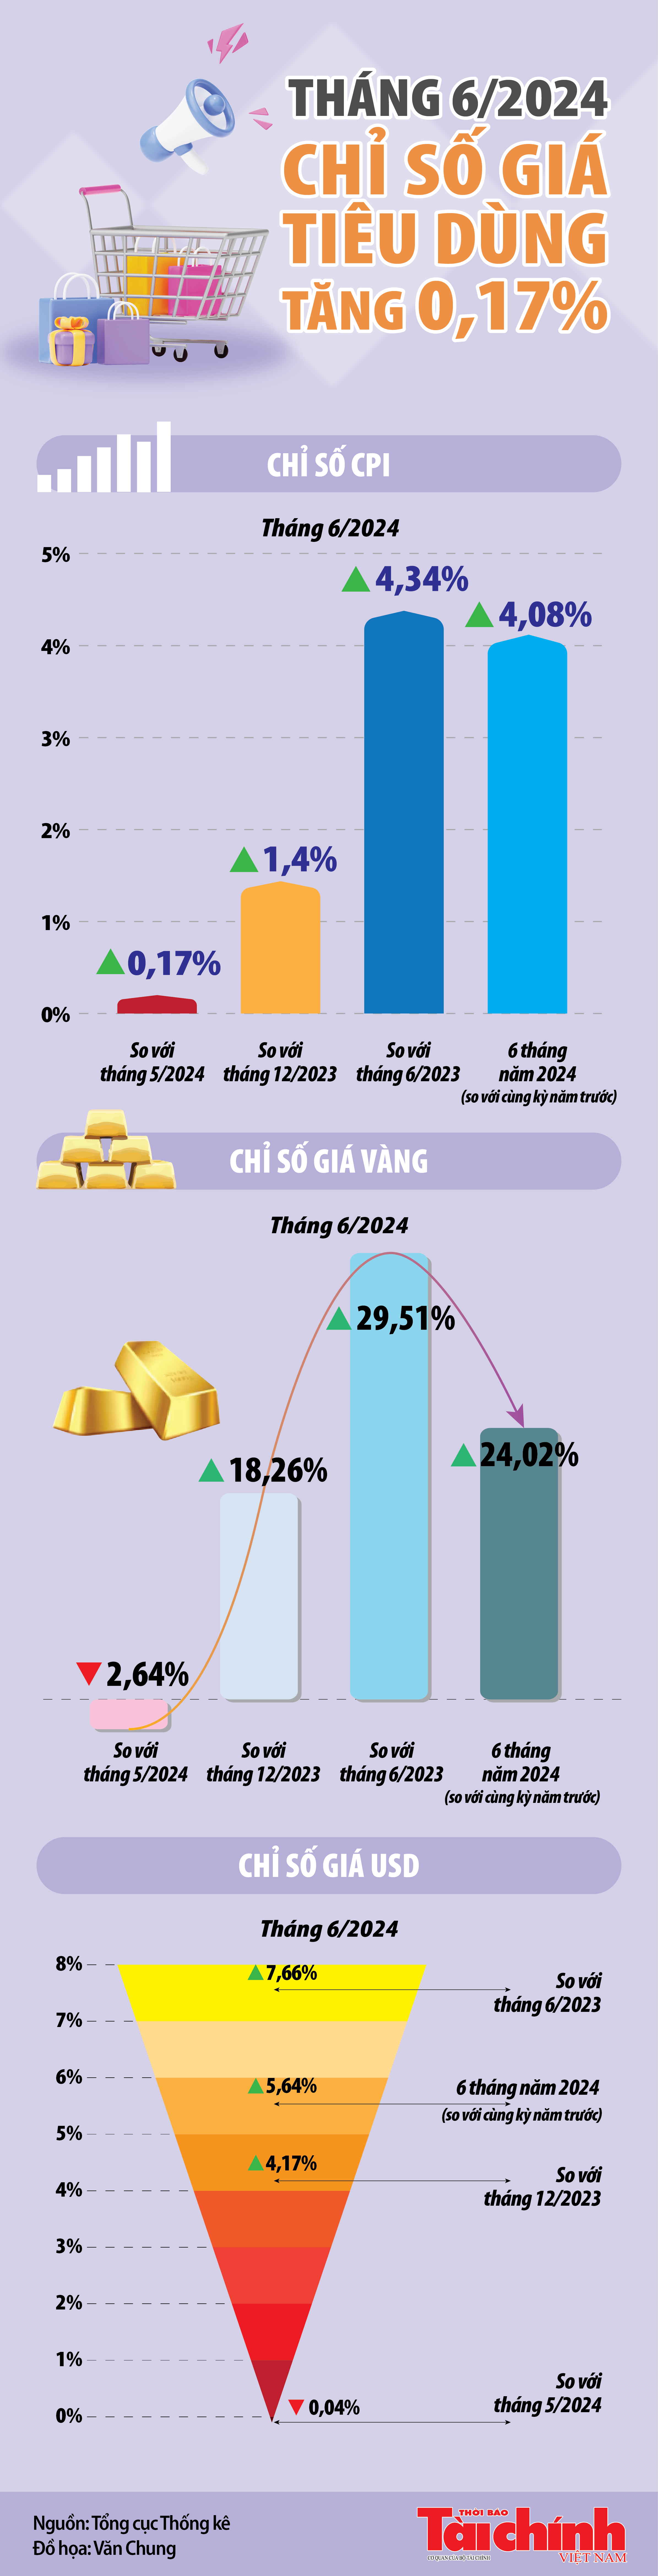 Infographics: Chỉ số giá tiêu dùng tháng 6/2024 tăng 0,17%